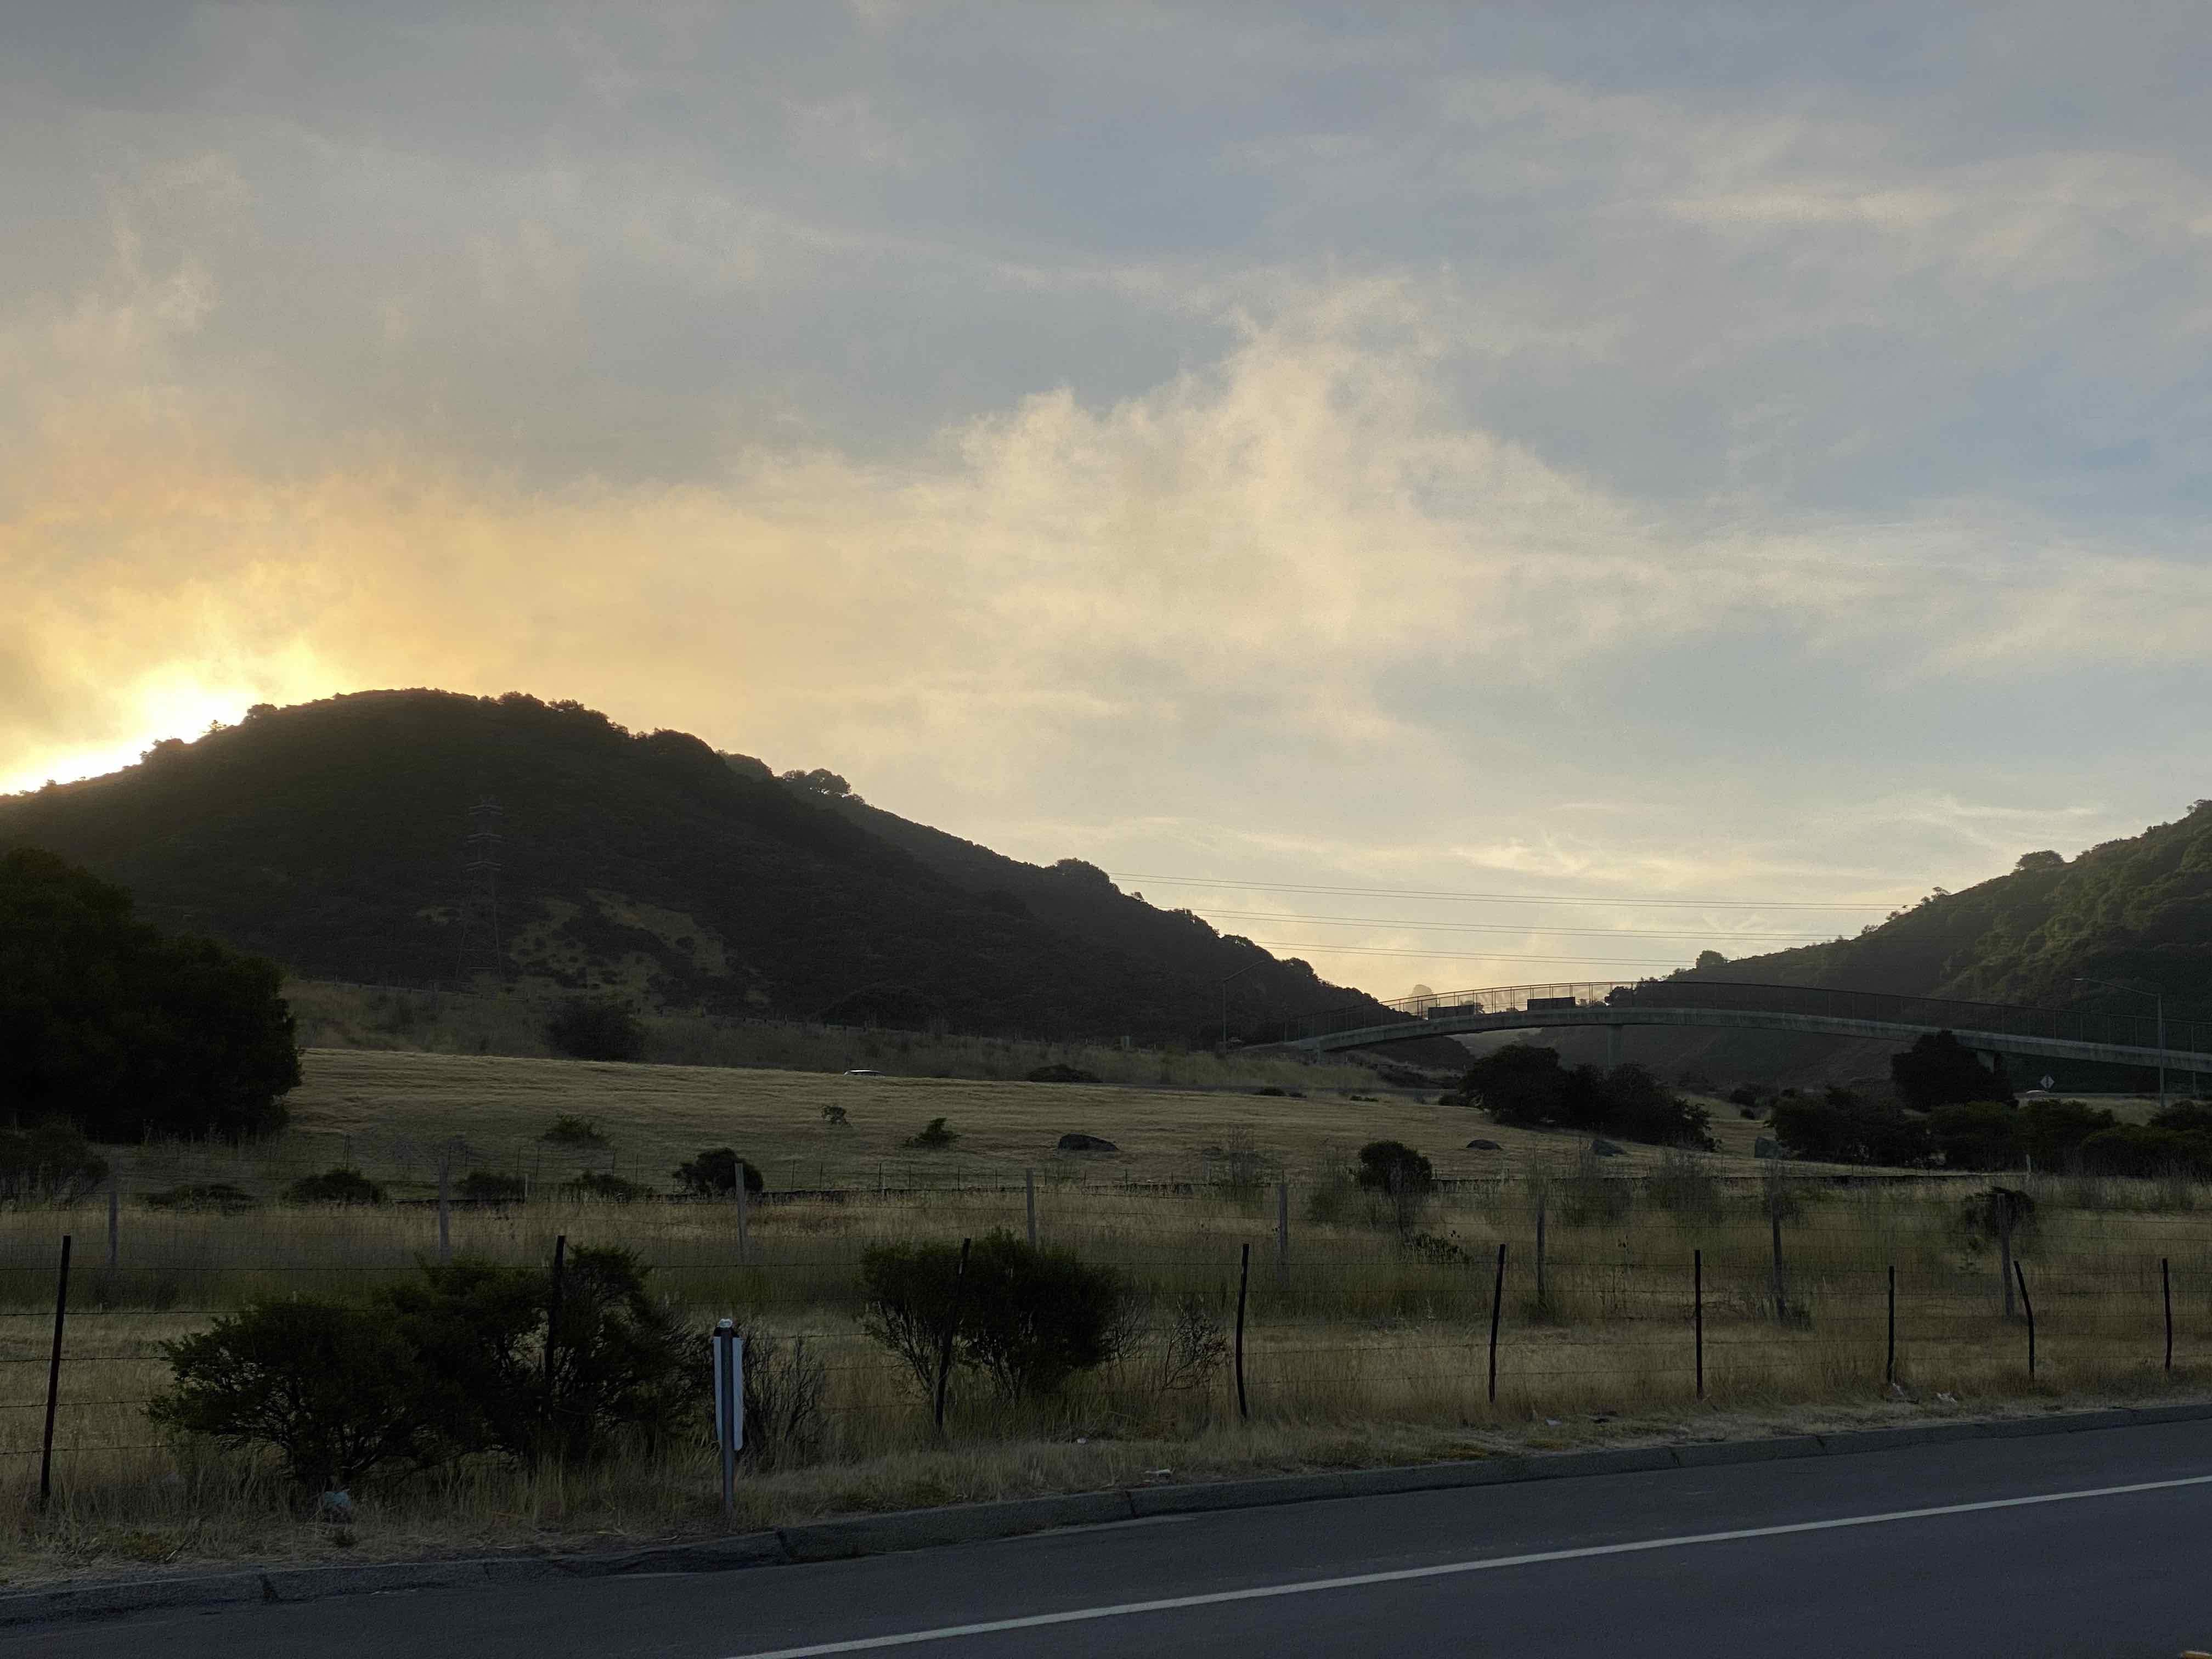 Sun rising over mountain along Canada road near San Mateo, California